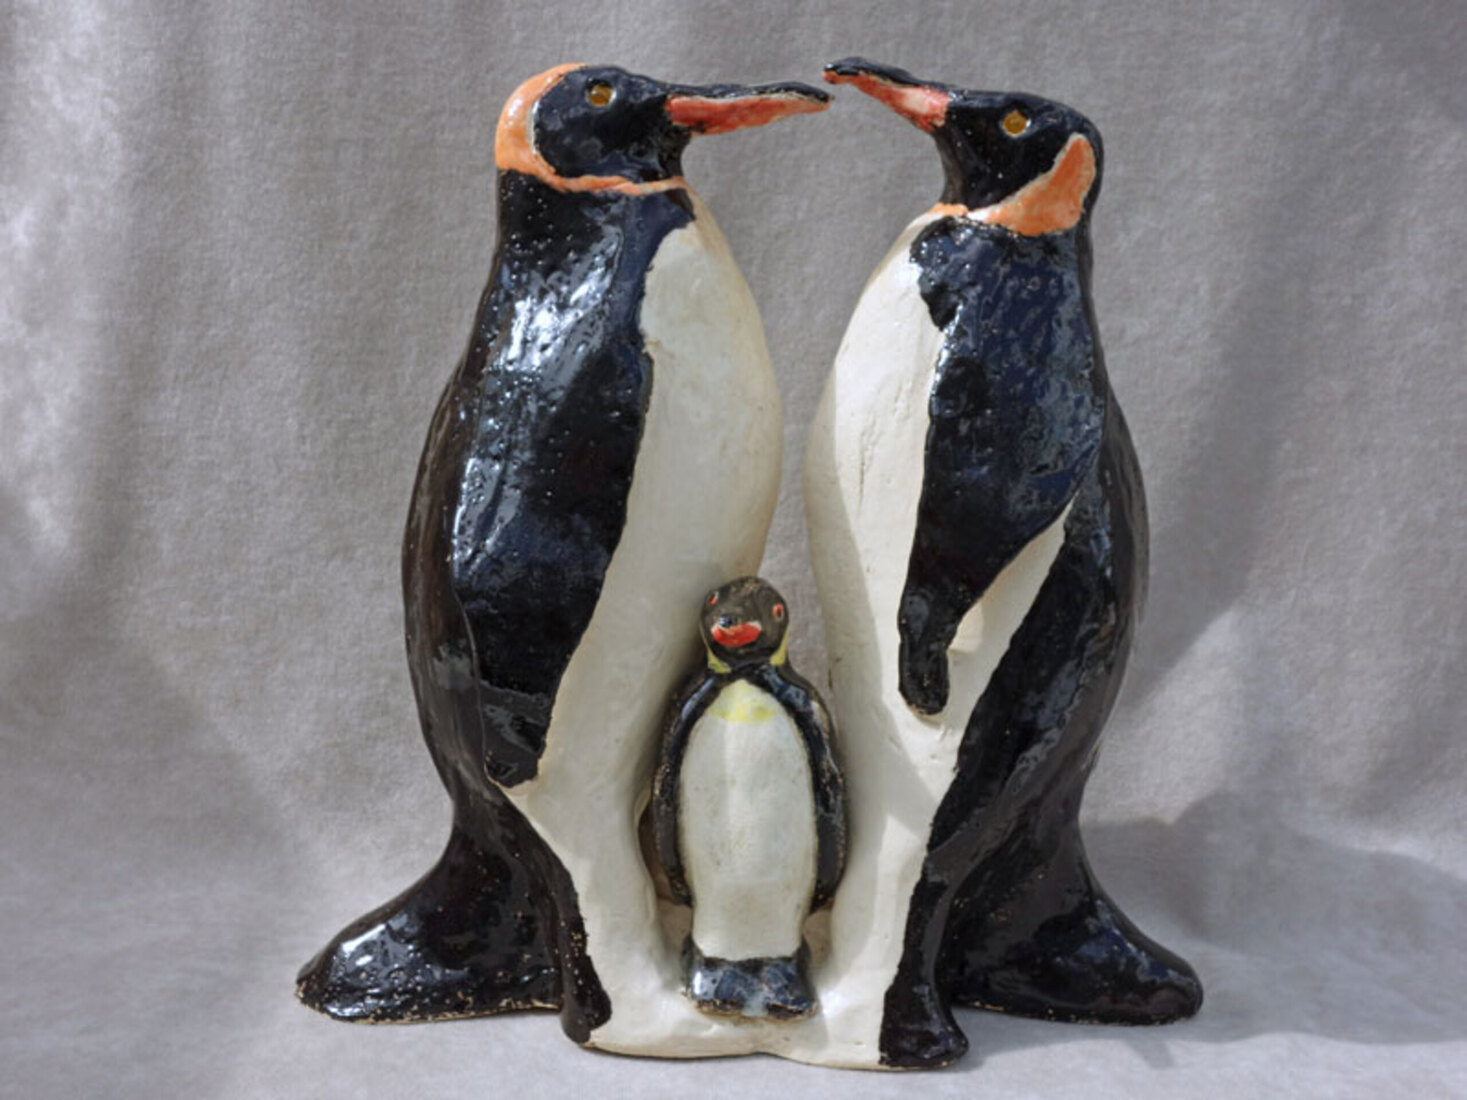 Pinguïns met jong, Pinguine mit Jungem, penquins with joung, manchots avec petit